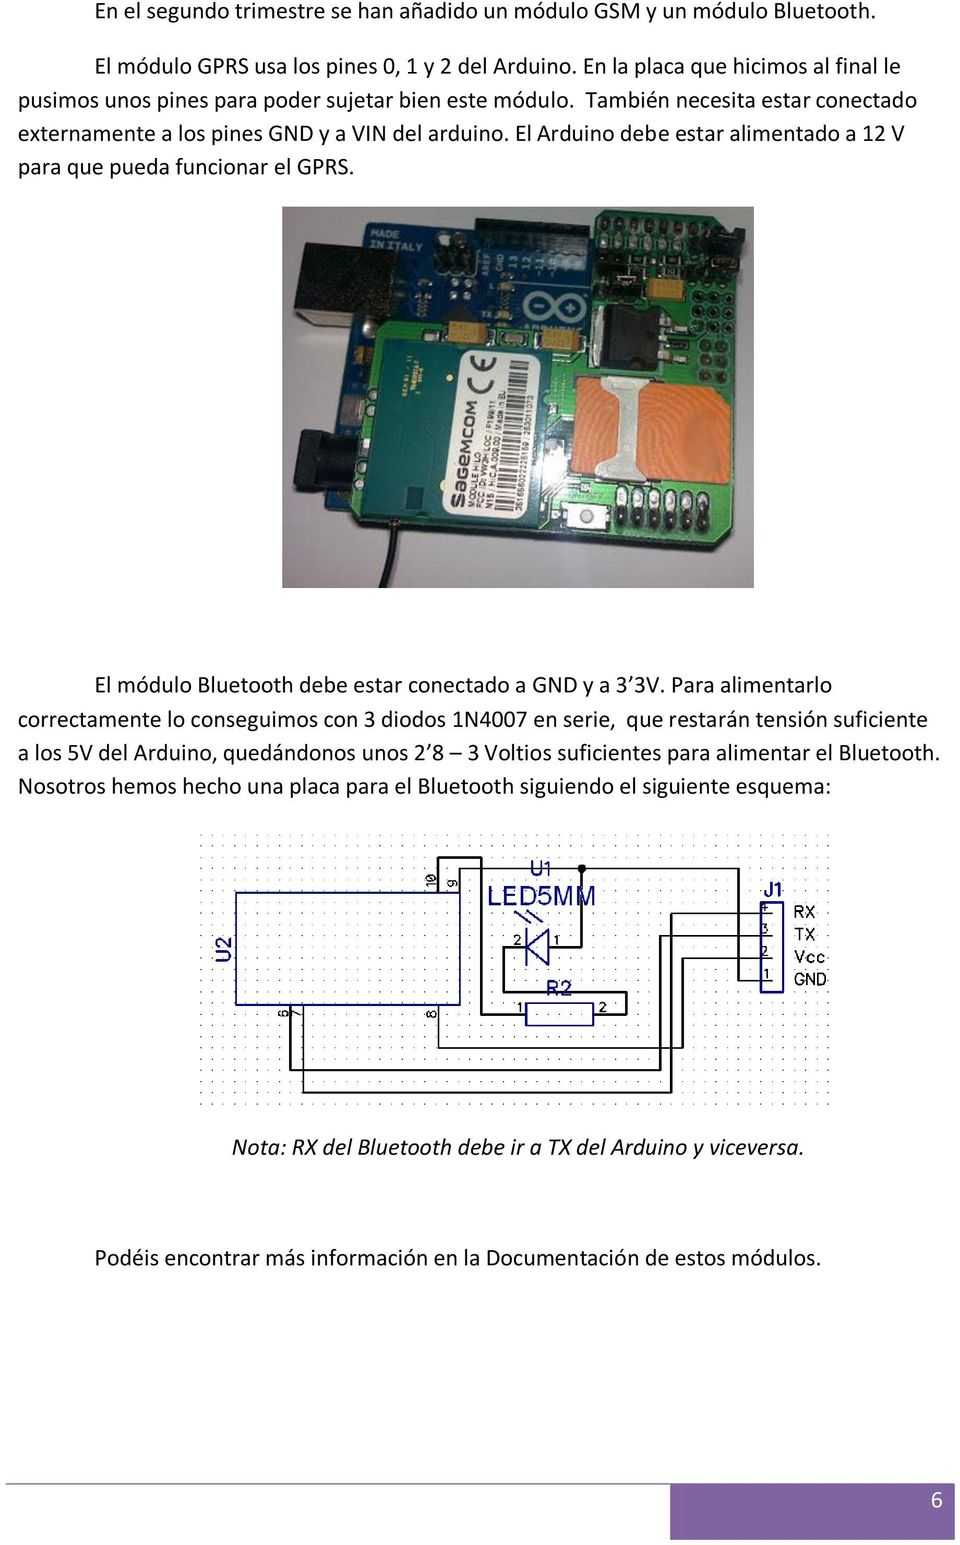 El Arduino debe estar alimentado a 12 V para que pueda funcionar el GPRS. El módulo Bluetooth debe estar conectado a GND y a 3 3V.